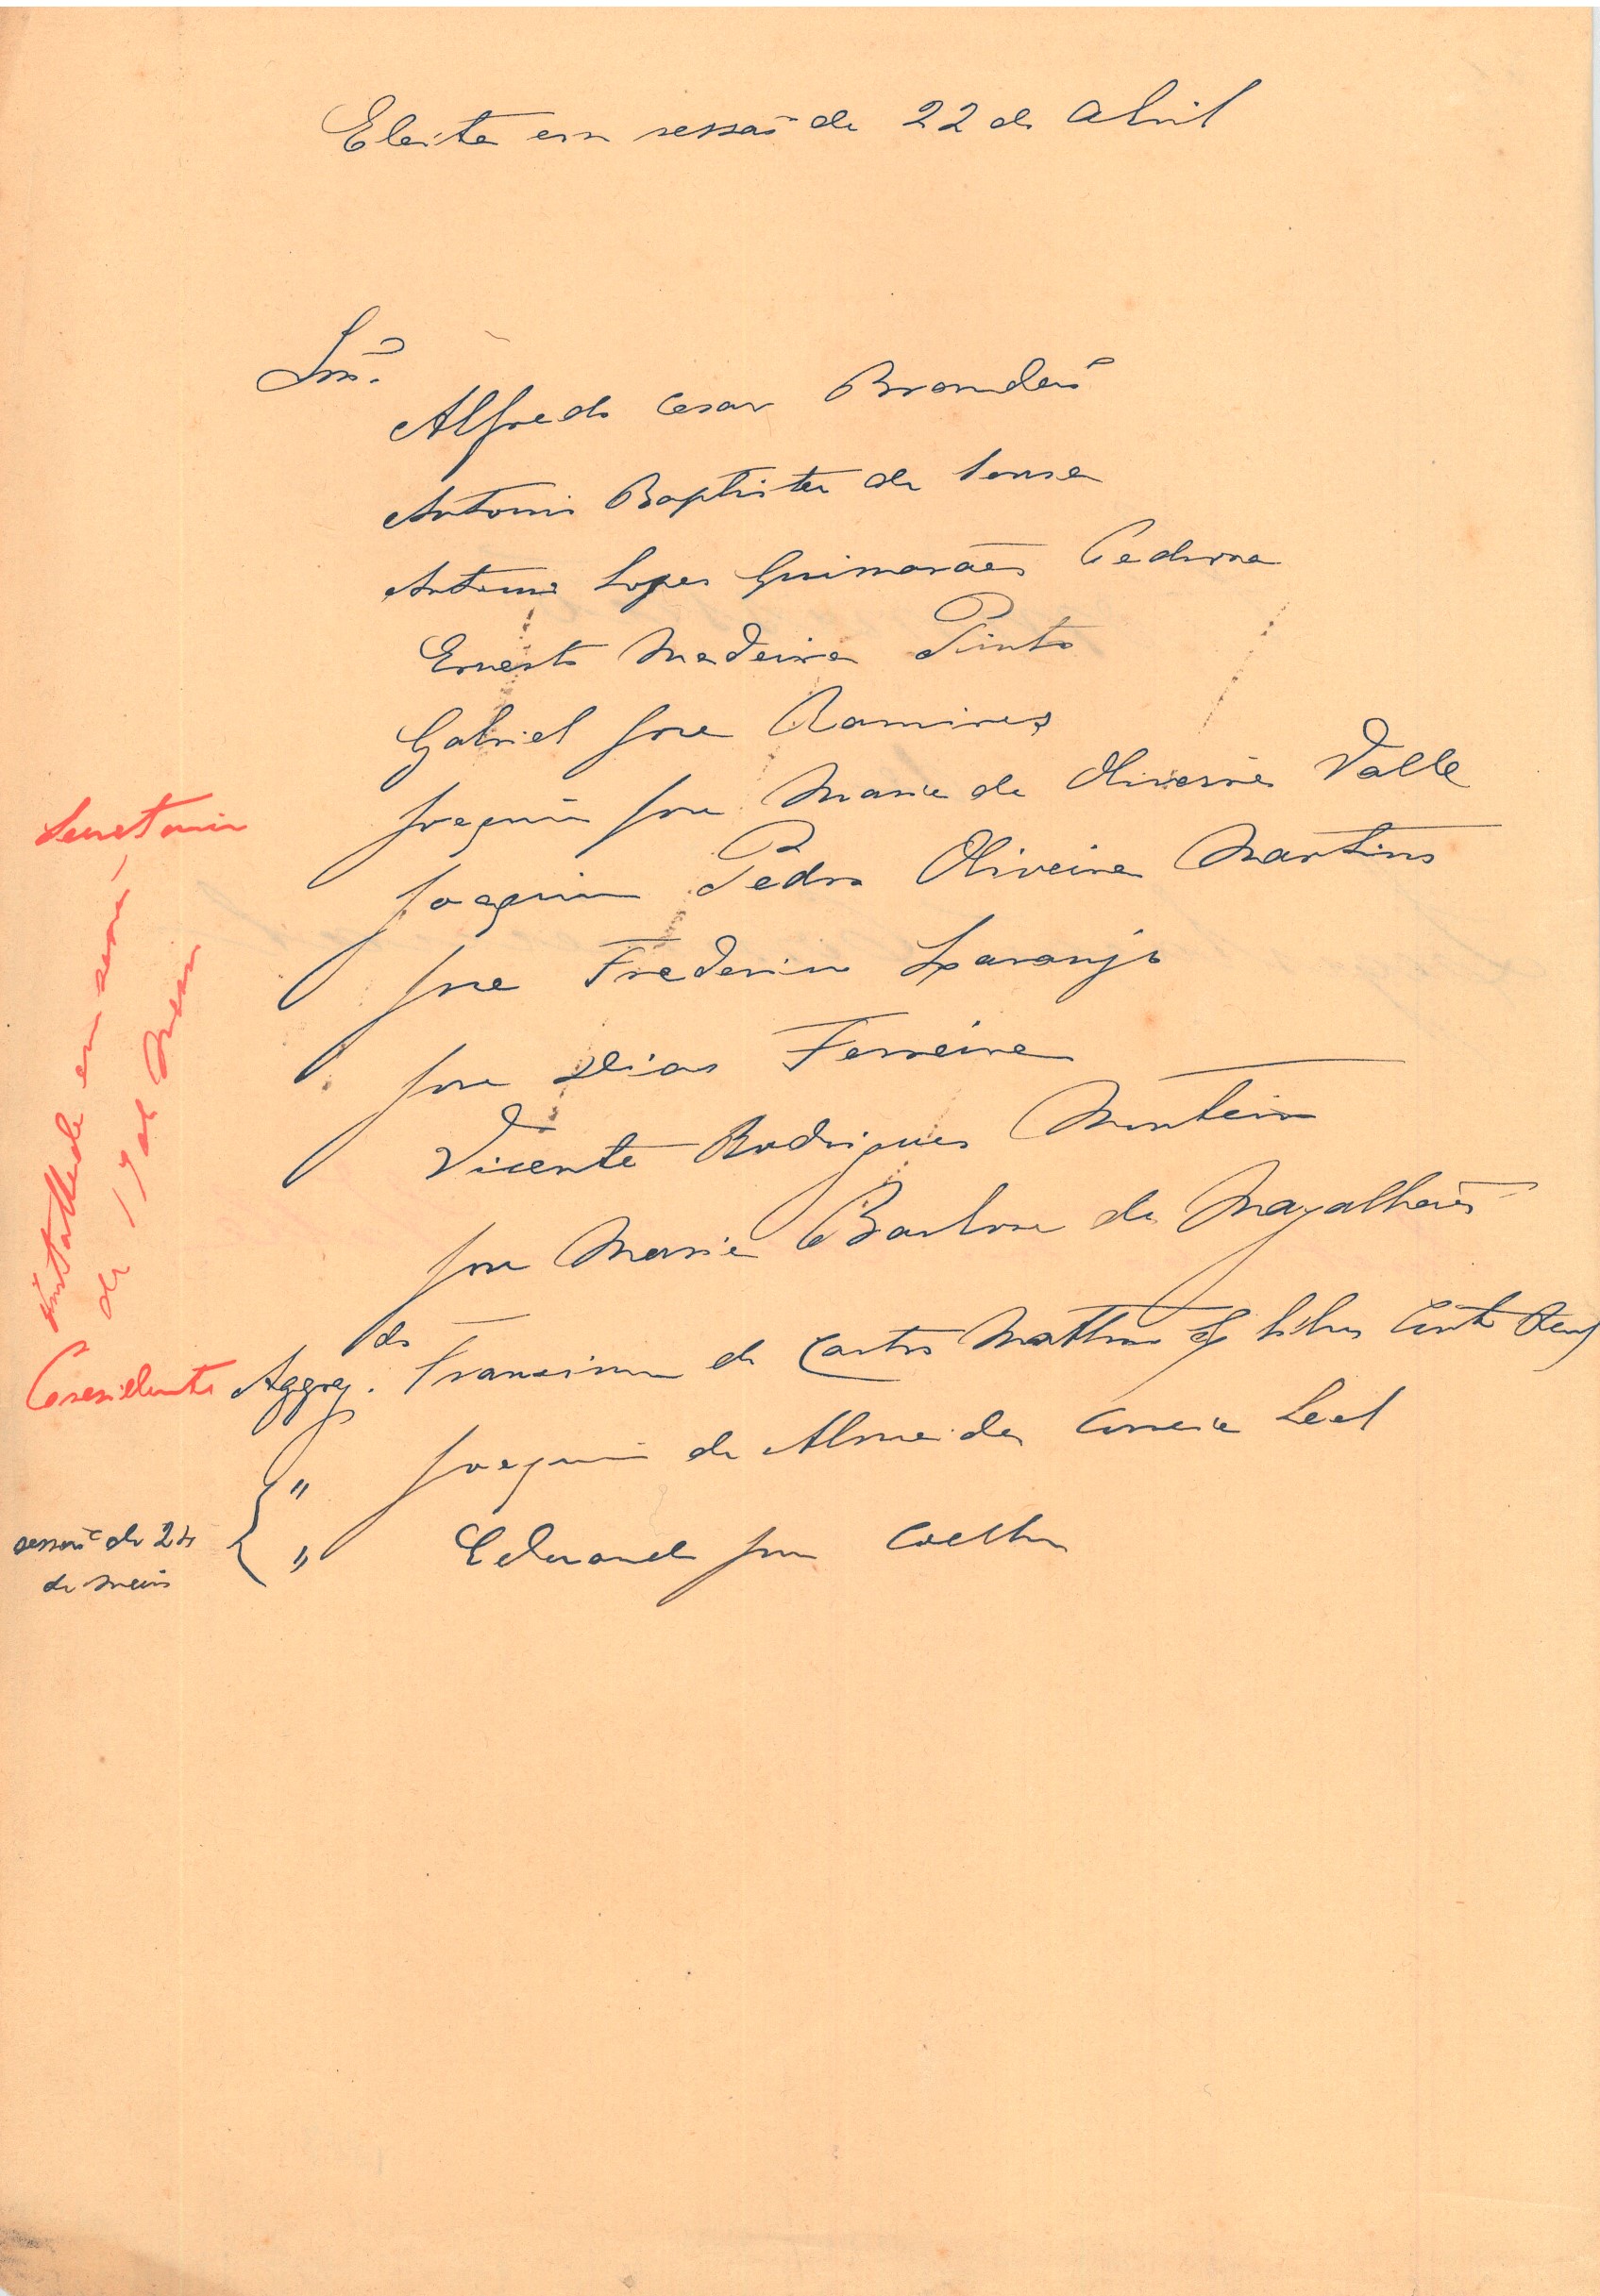 Lista dos deputados eleitos na sessão de 22 de abril de 1887 para constituírem a Comissão de Legislação Comercial. Cota AHP: Secção I/II, cx. 656, mç. 583, doc. 26.